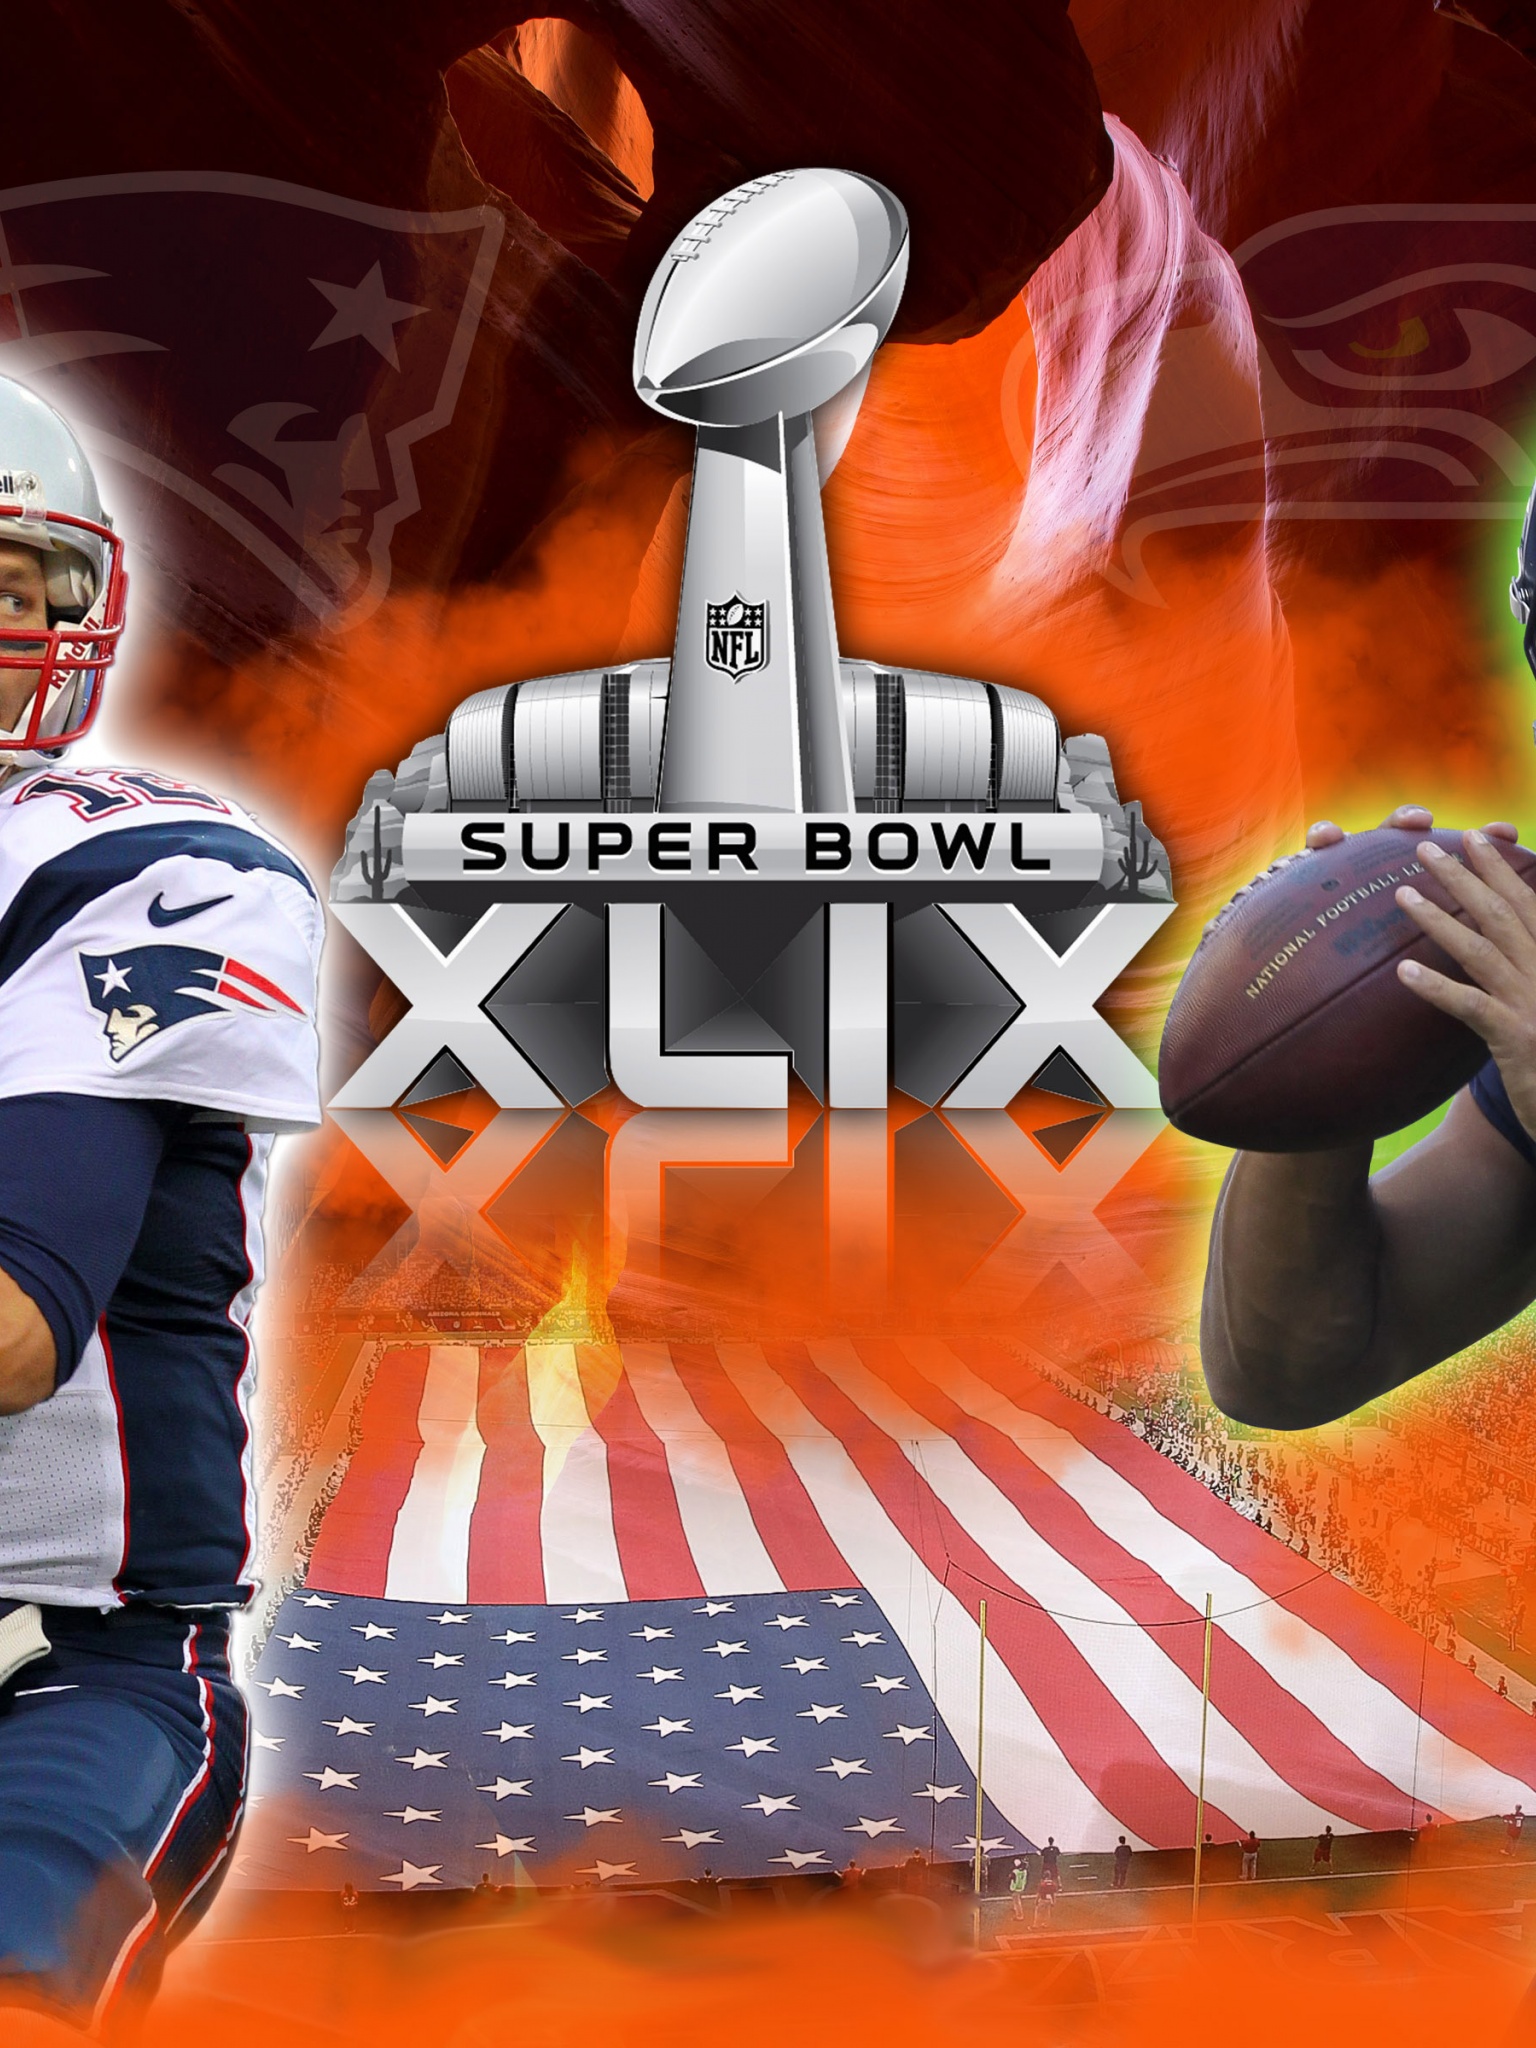 Patriots Vs Seahawks XLIX Super Bowl